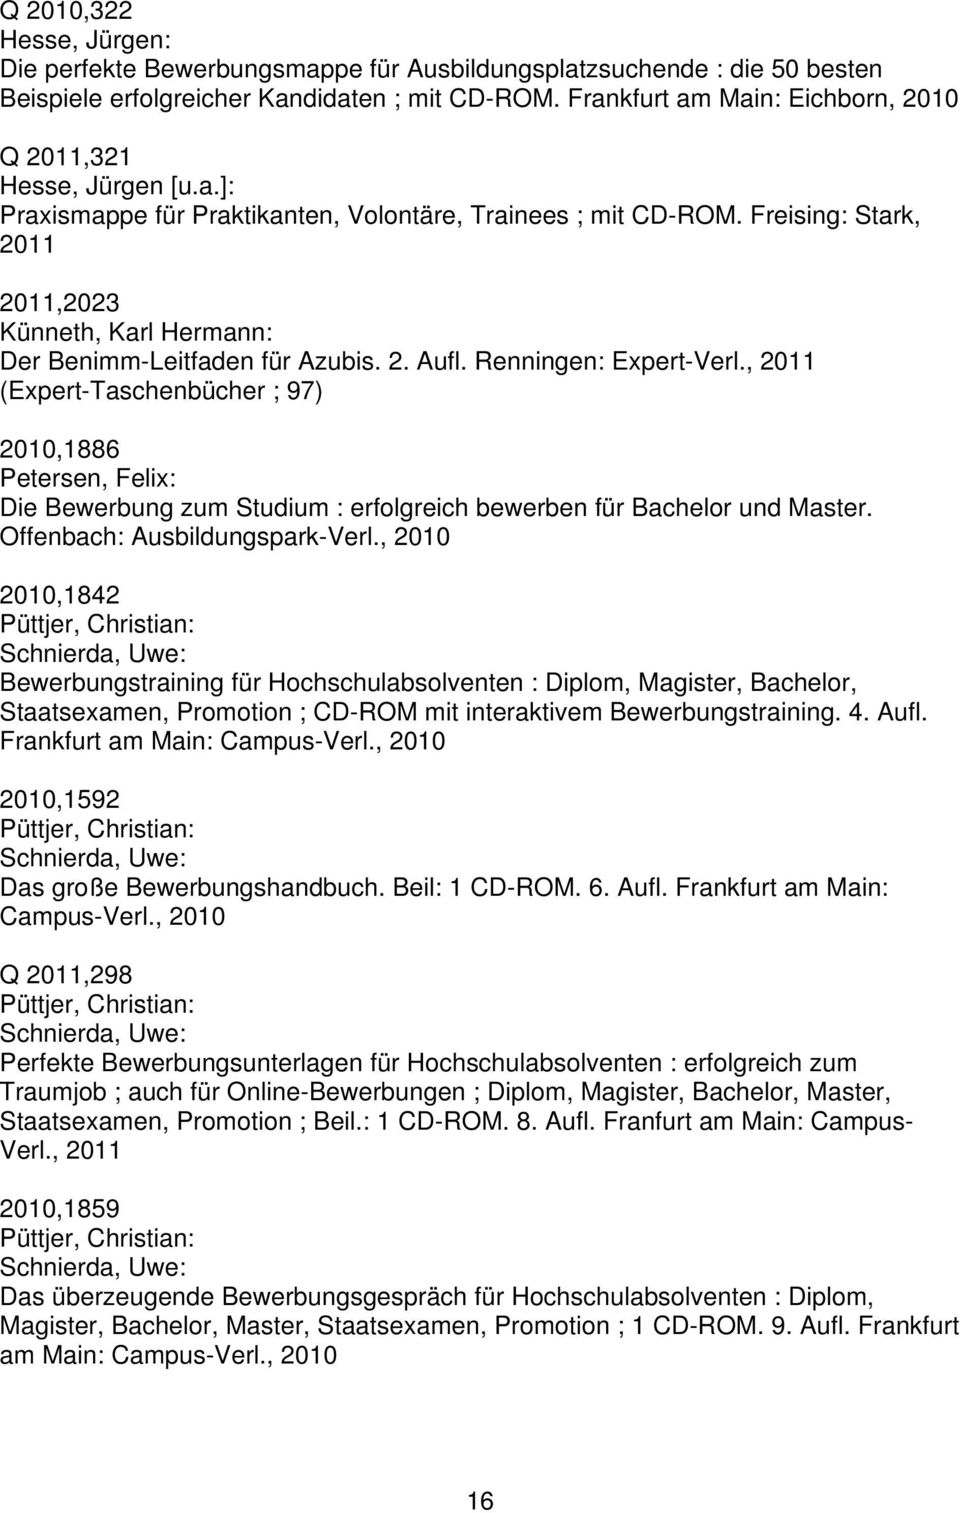 Freising: Stark, 2011 2011,2023 Künneth, Karl Hermann: Der Benimm-Leitfaden für Azubis. 2. Aufl. Renningen: Expert-Verl.